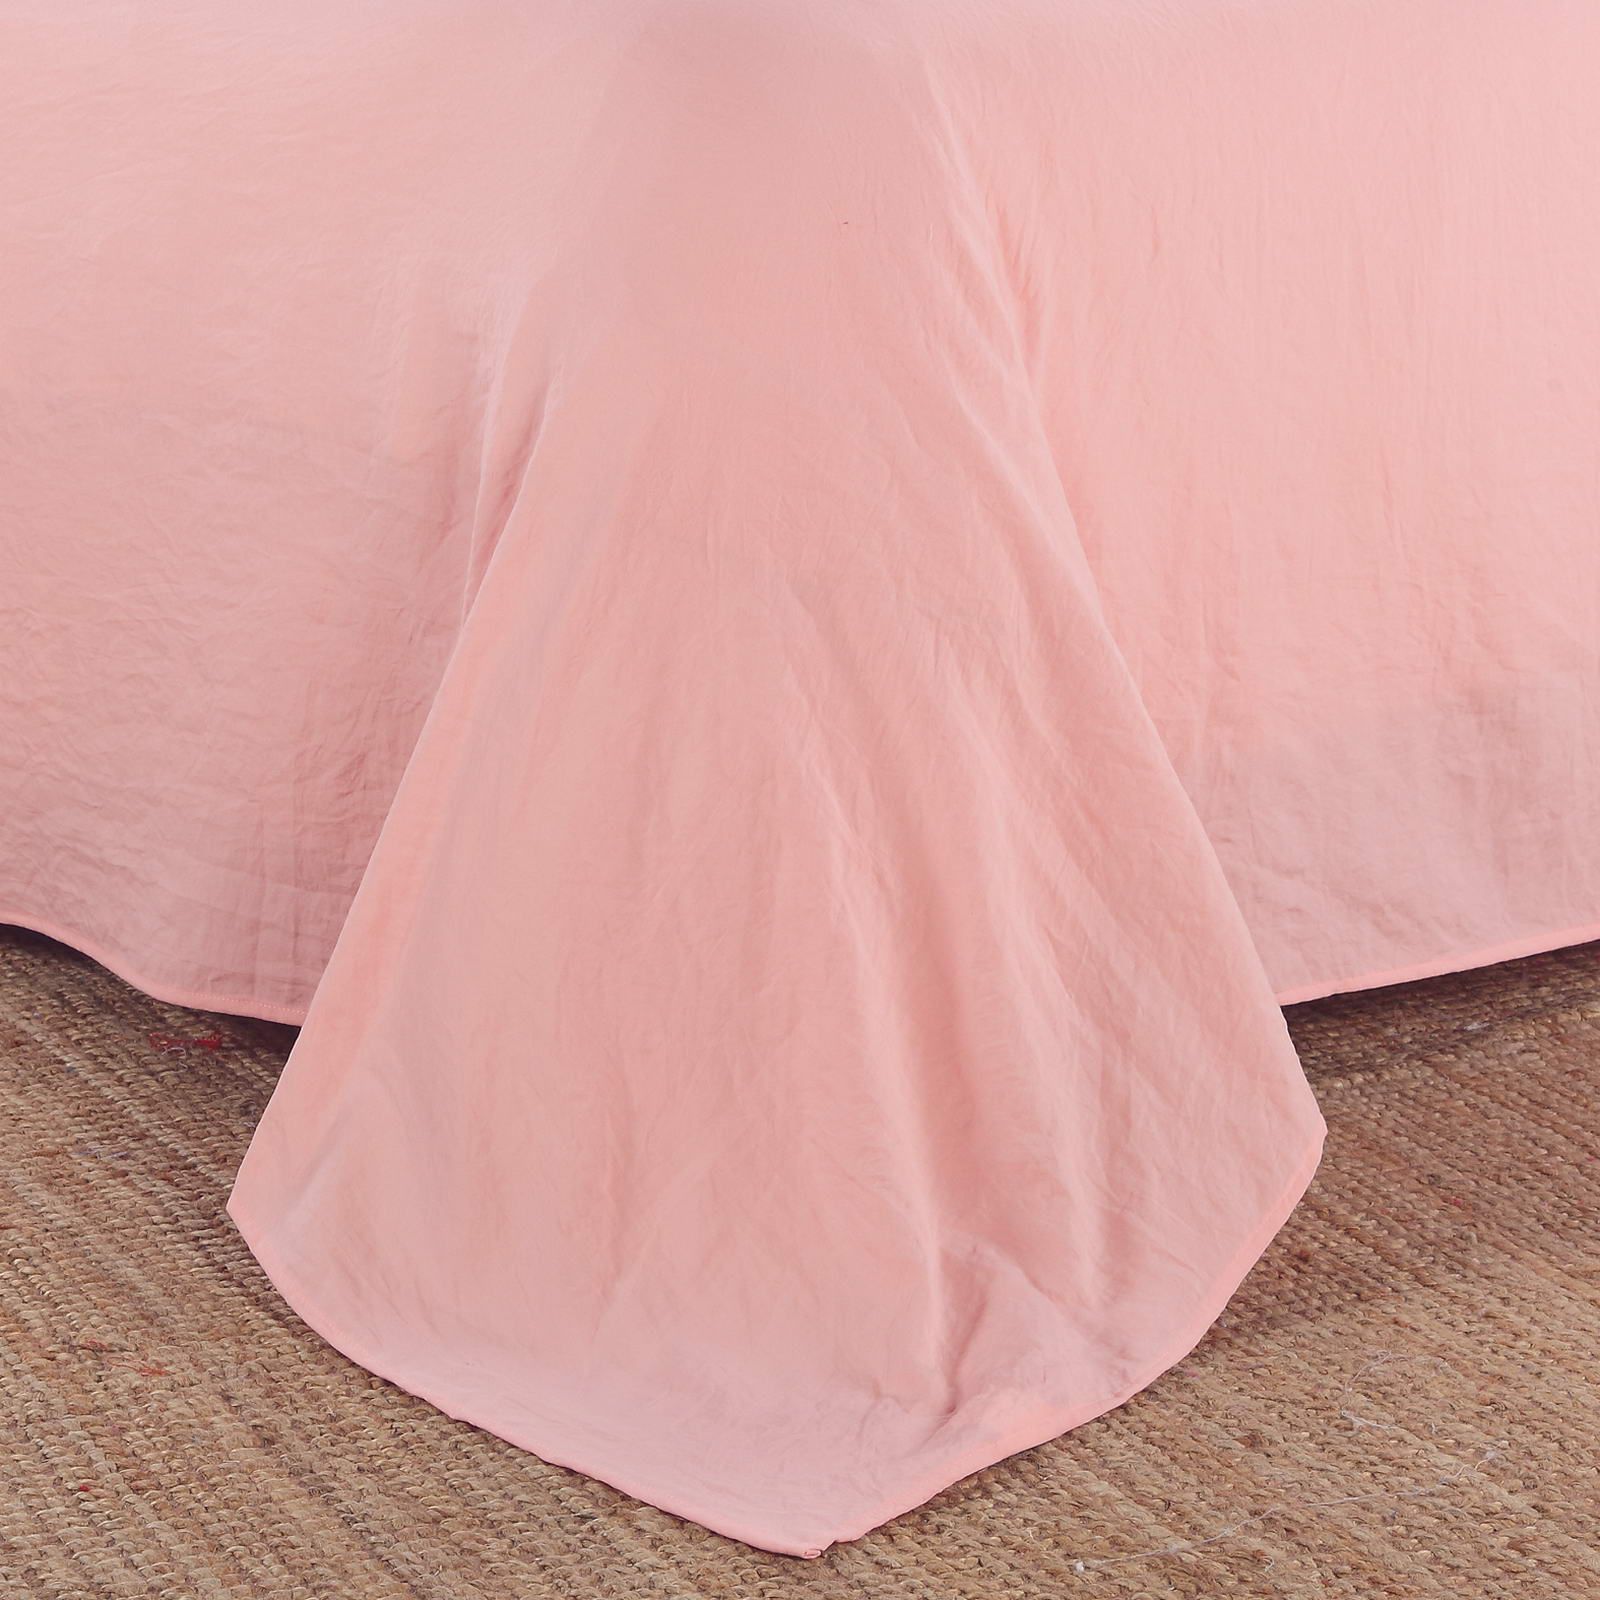 Камелия (персик) Полутороспальный комплект с одеялом с вышивкой 160х220 см